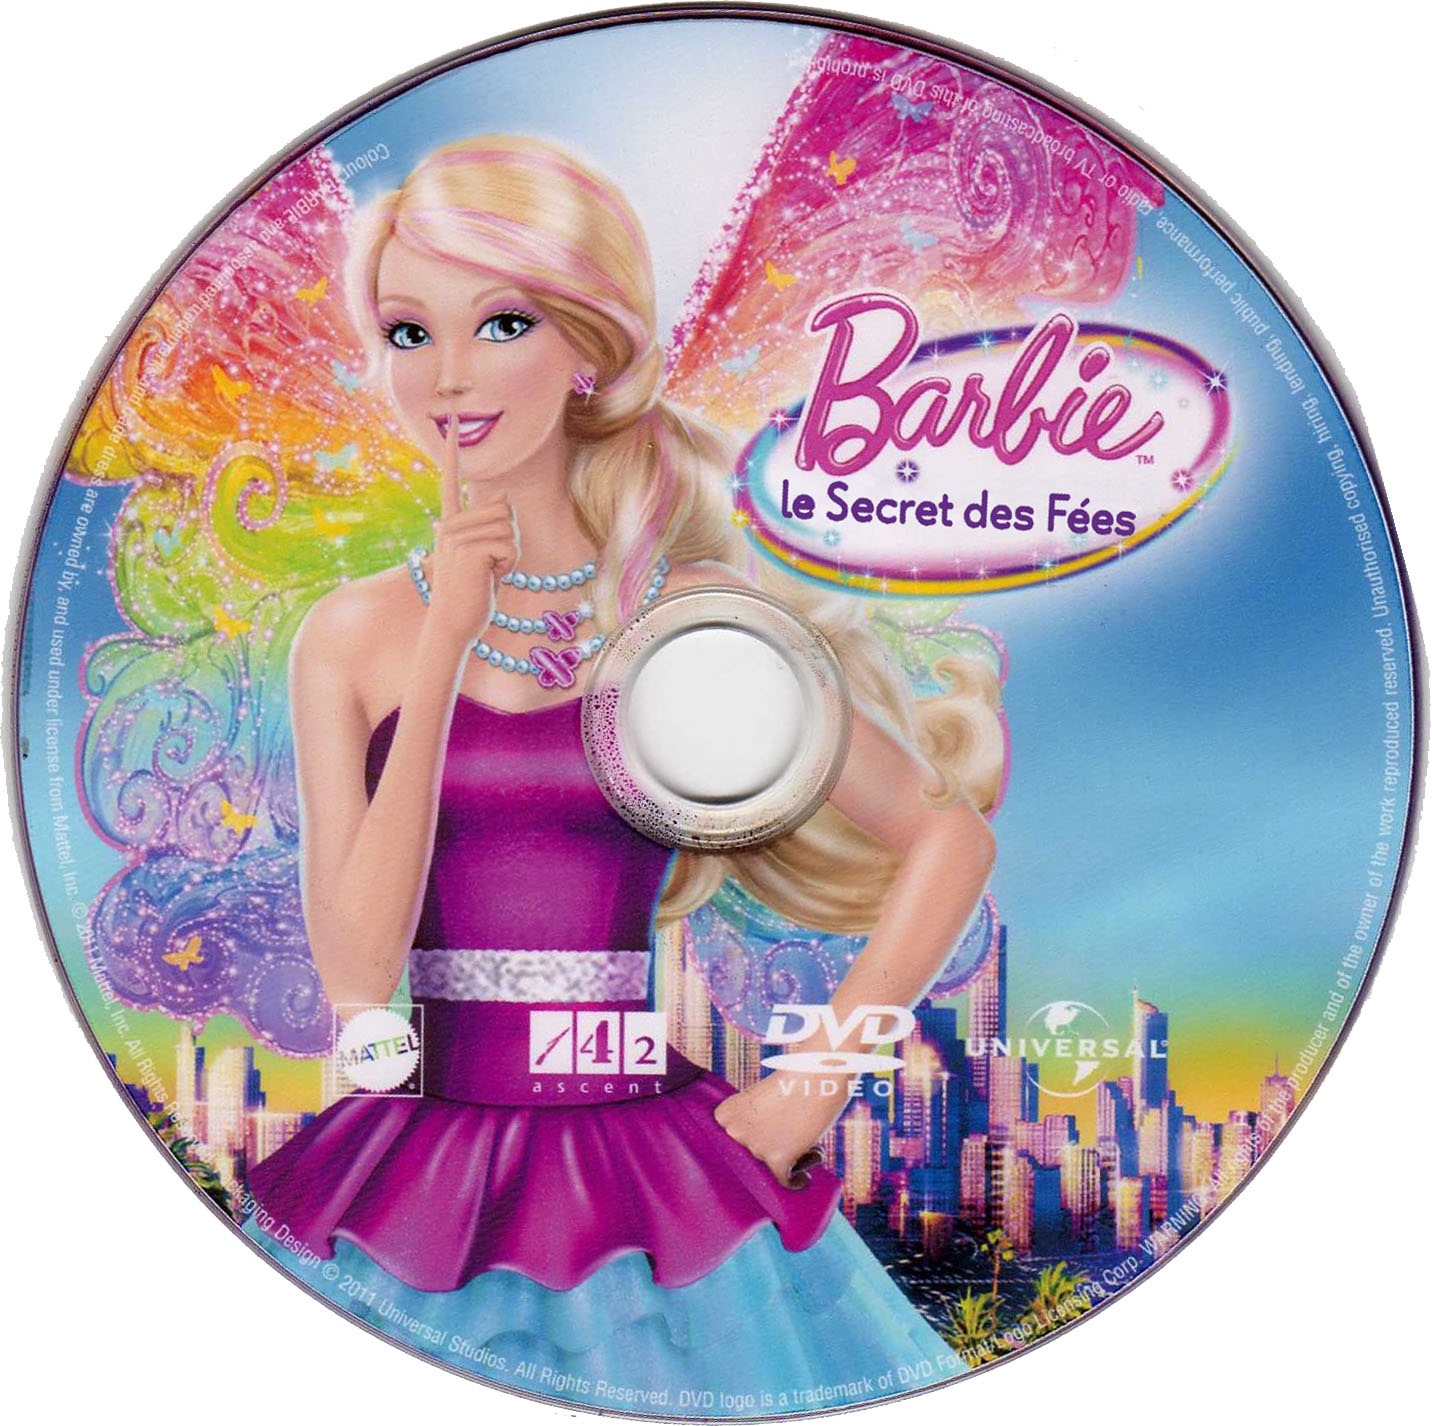 Barbie et le secret des fes